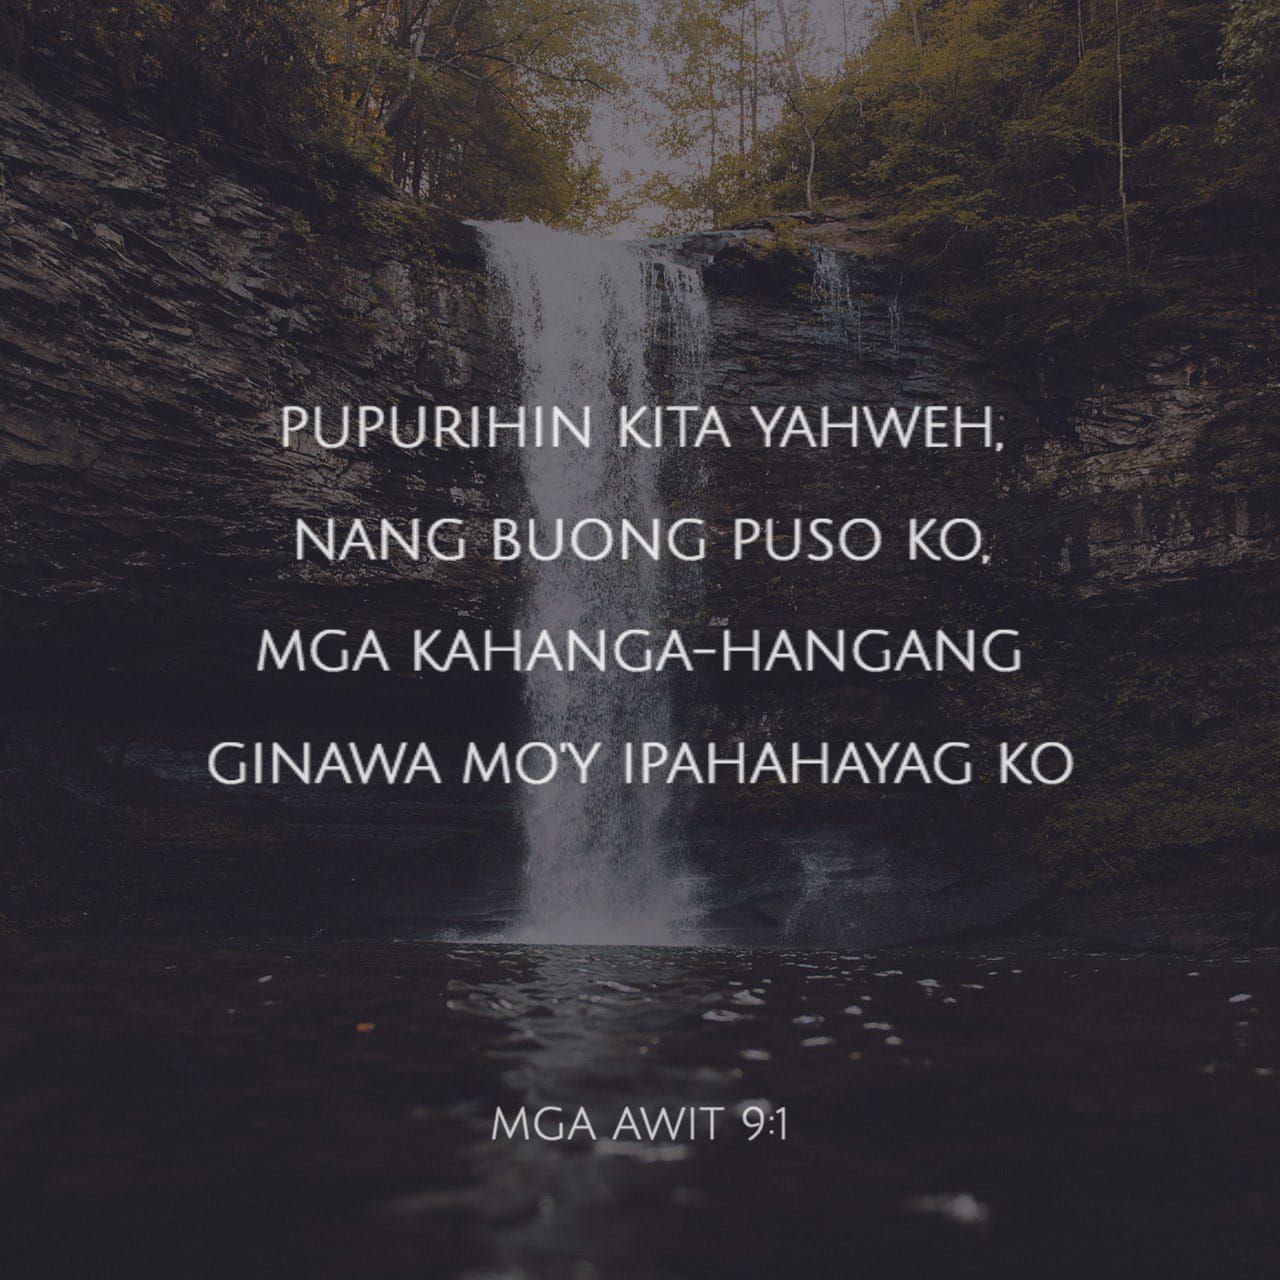 Mga Awit 9:1-2 Pupurihin kita Yahweh, nang buong puso ko, mga kahanga